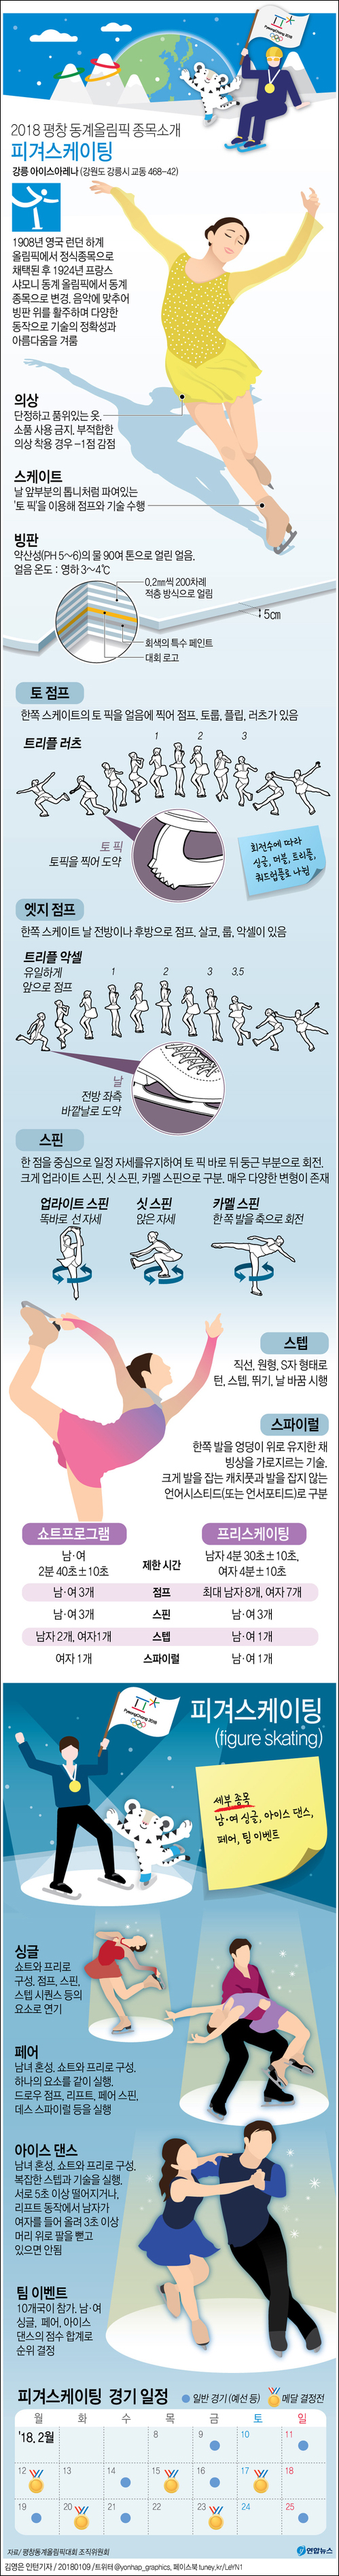 피겨스케이팅 종목소개. ⓒ 연합뉴스